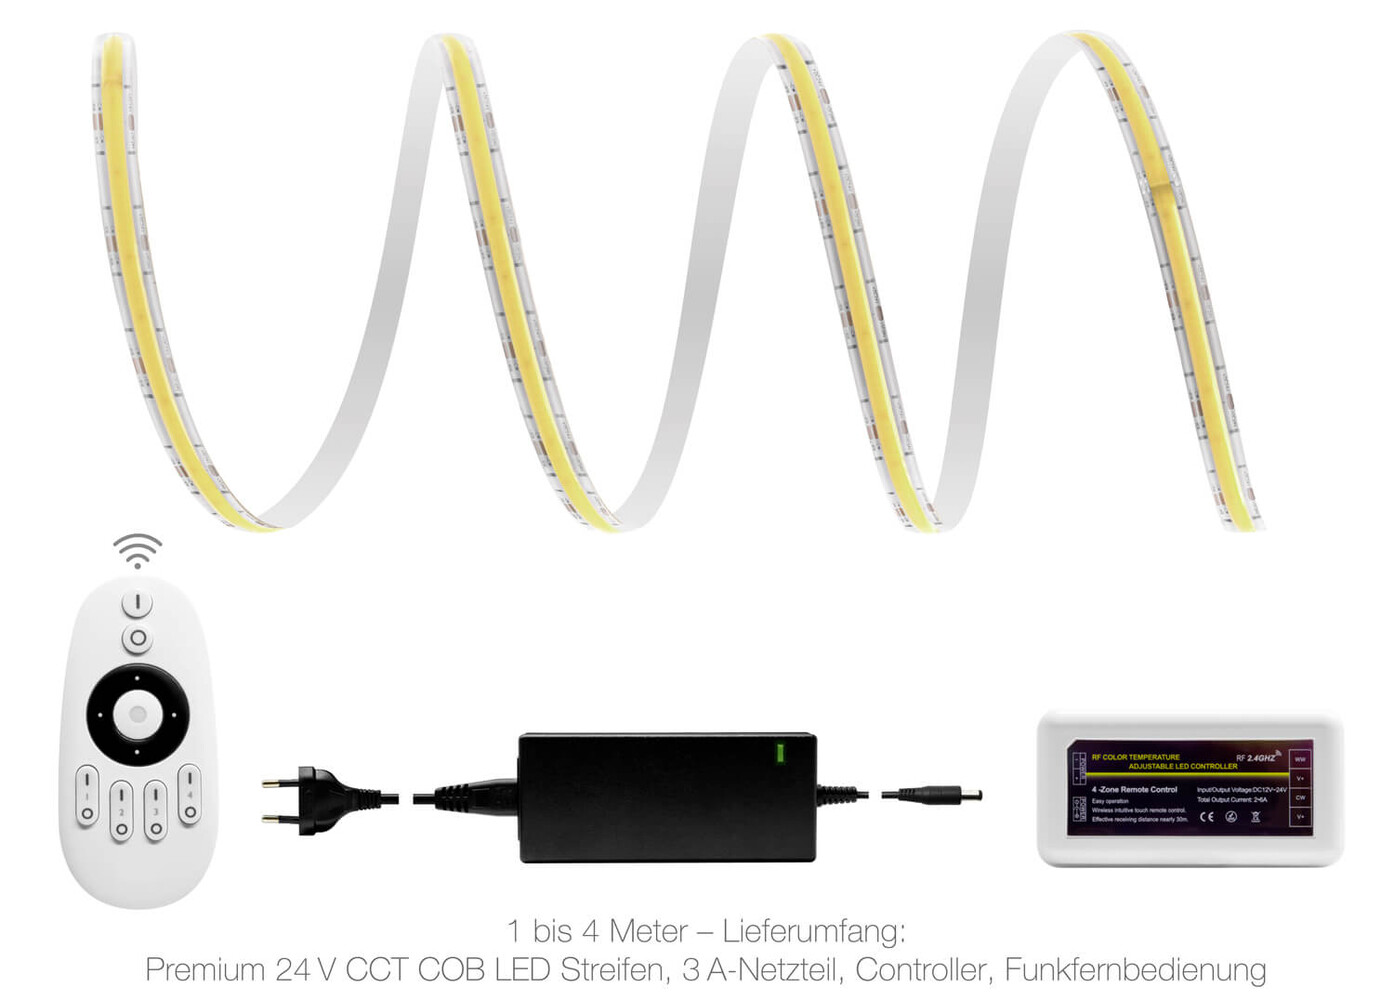 Hochwertiger LED Streifen von LED Universum in Premium Qualität